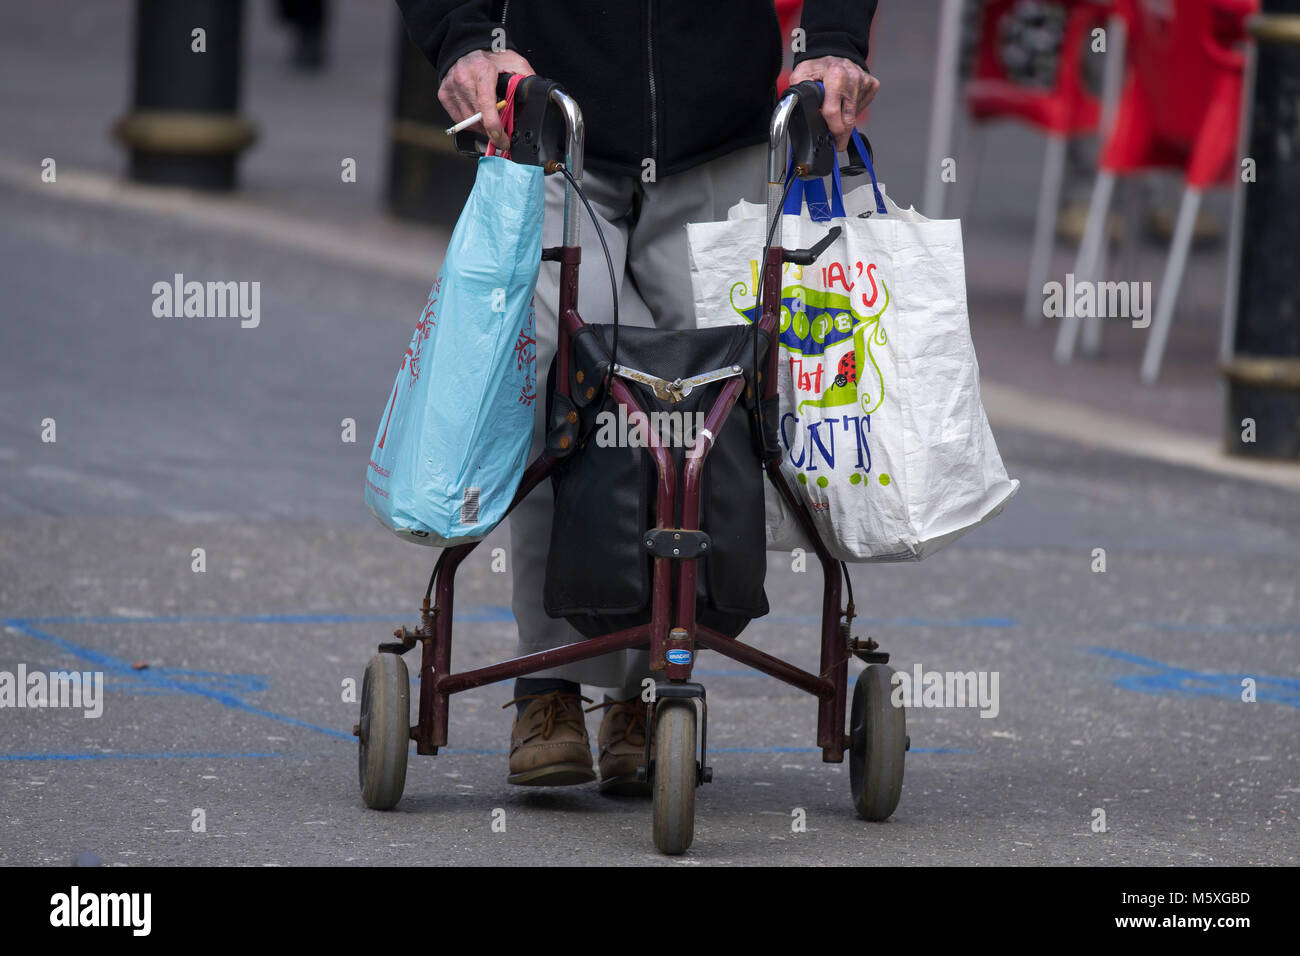 Une pension de vieillesse à l'aide d'un cadre pour l'appui zimmer en marchant dans la rue carrying shopping bags in Cardiff, Pays de Galles, Royaume-Uni. Banque D'Images